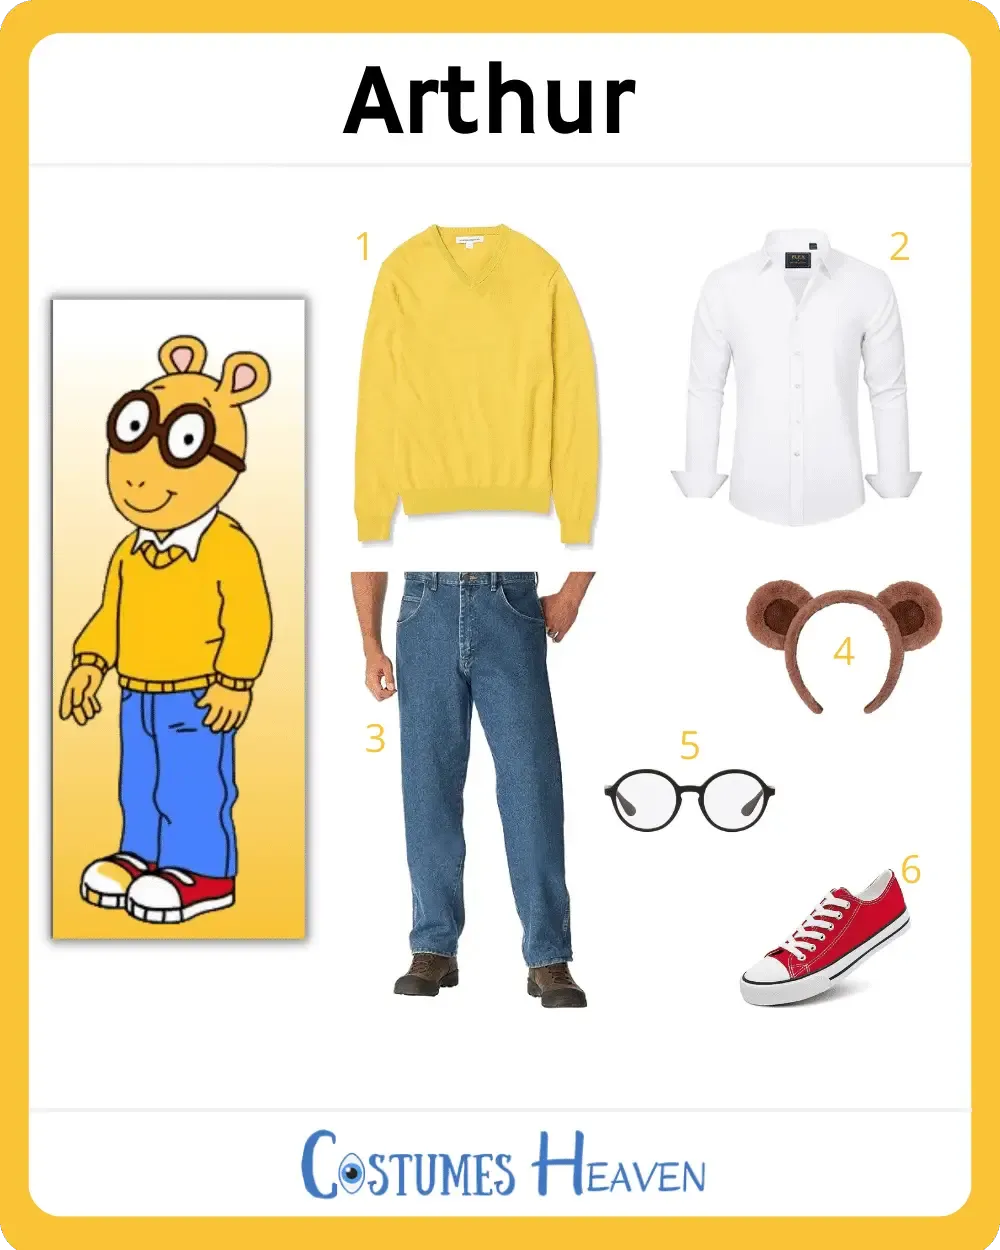 Arthur costume